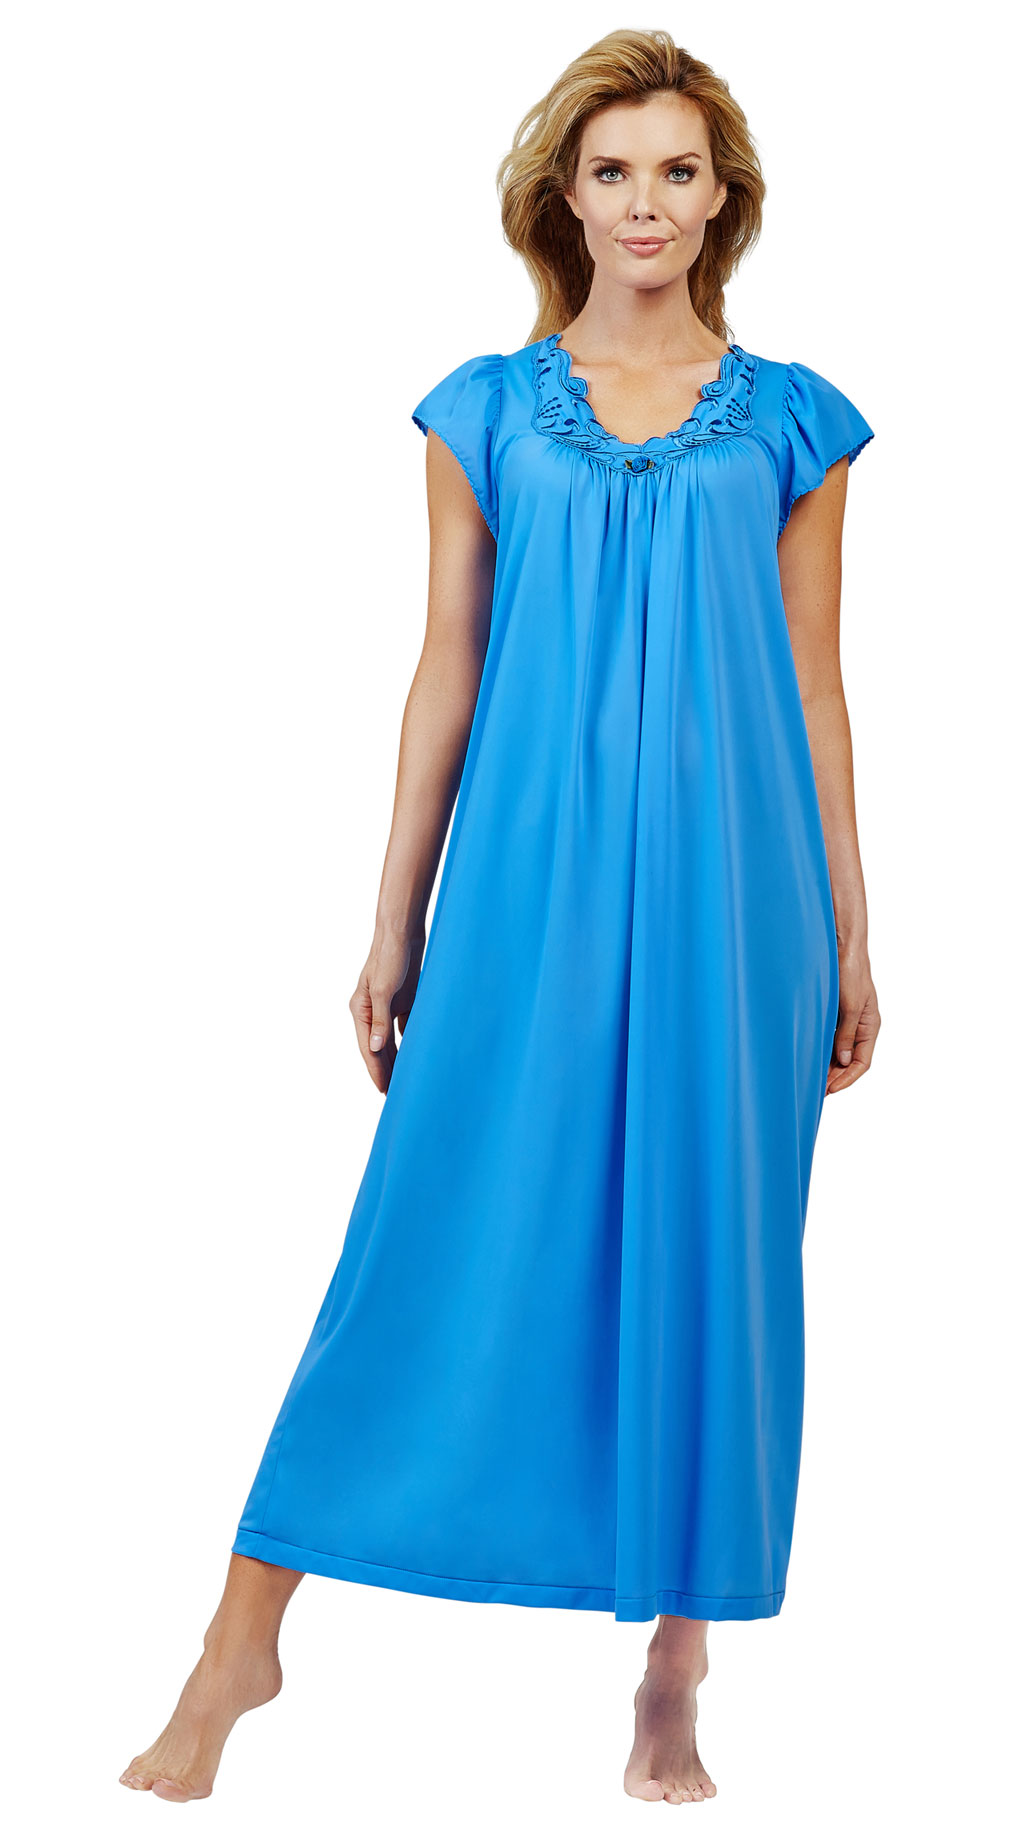 Hinton Happenings: My Favorite Nightgown